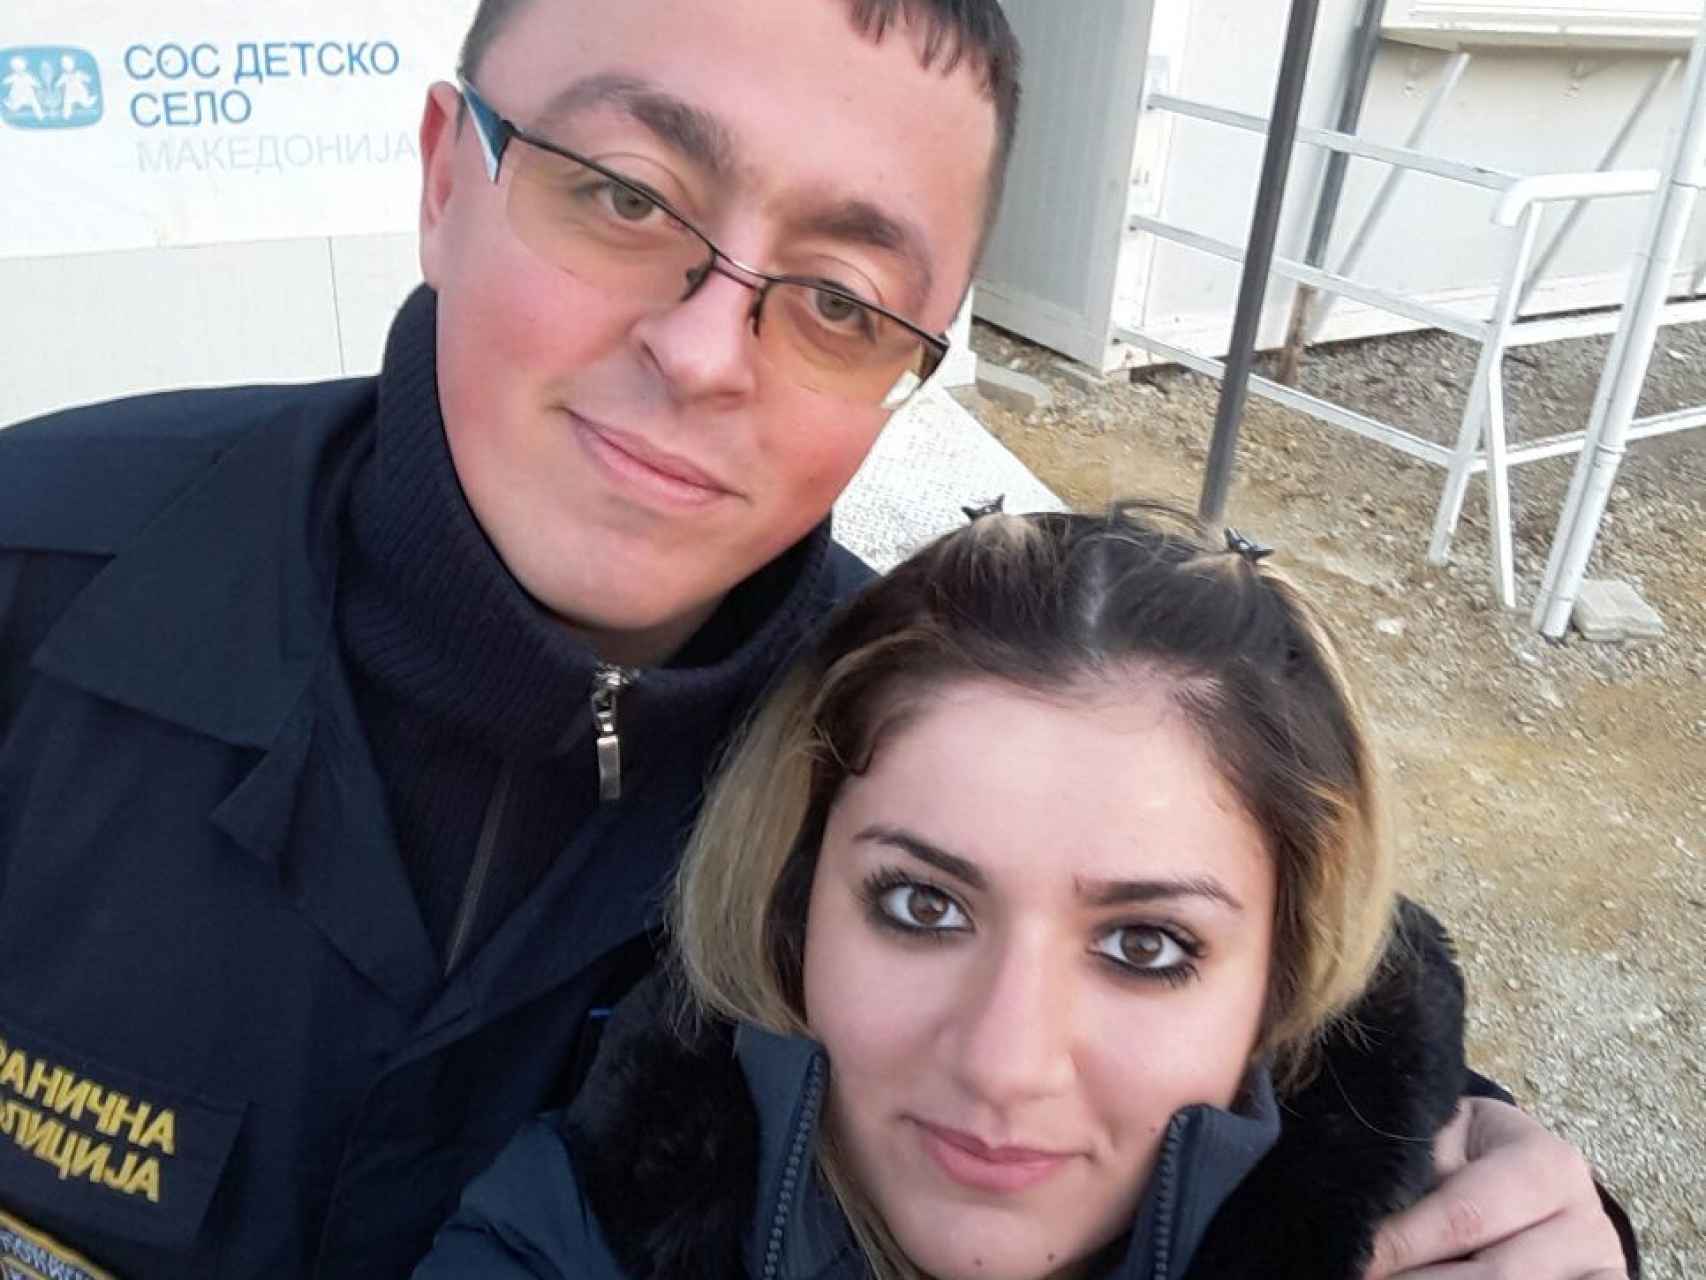 Noora y Bobi se hacen un selfi en la frontera de Macedonia con Serbia, cuando se conocieron.